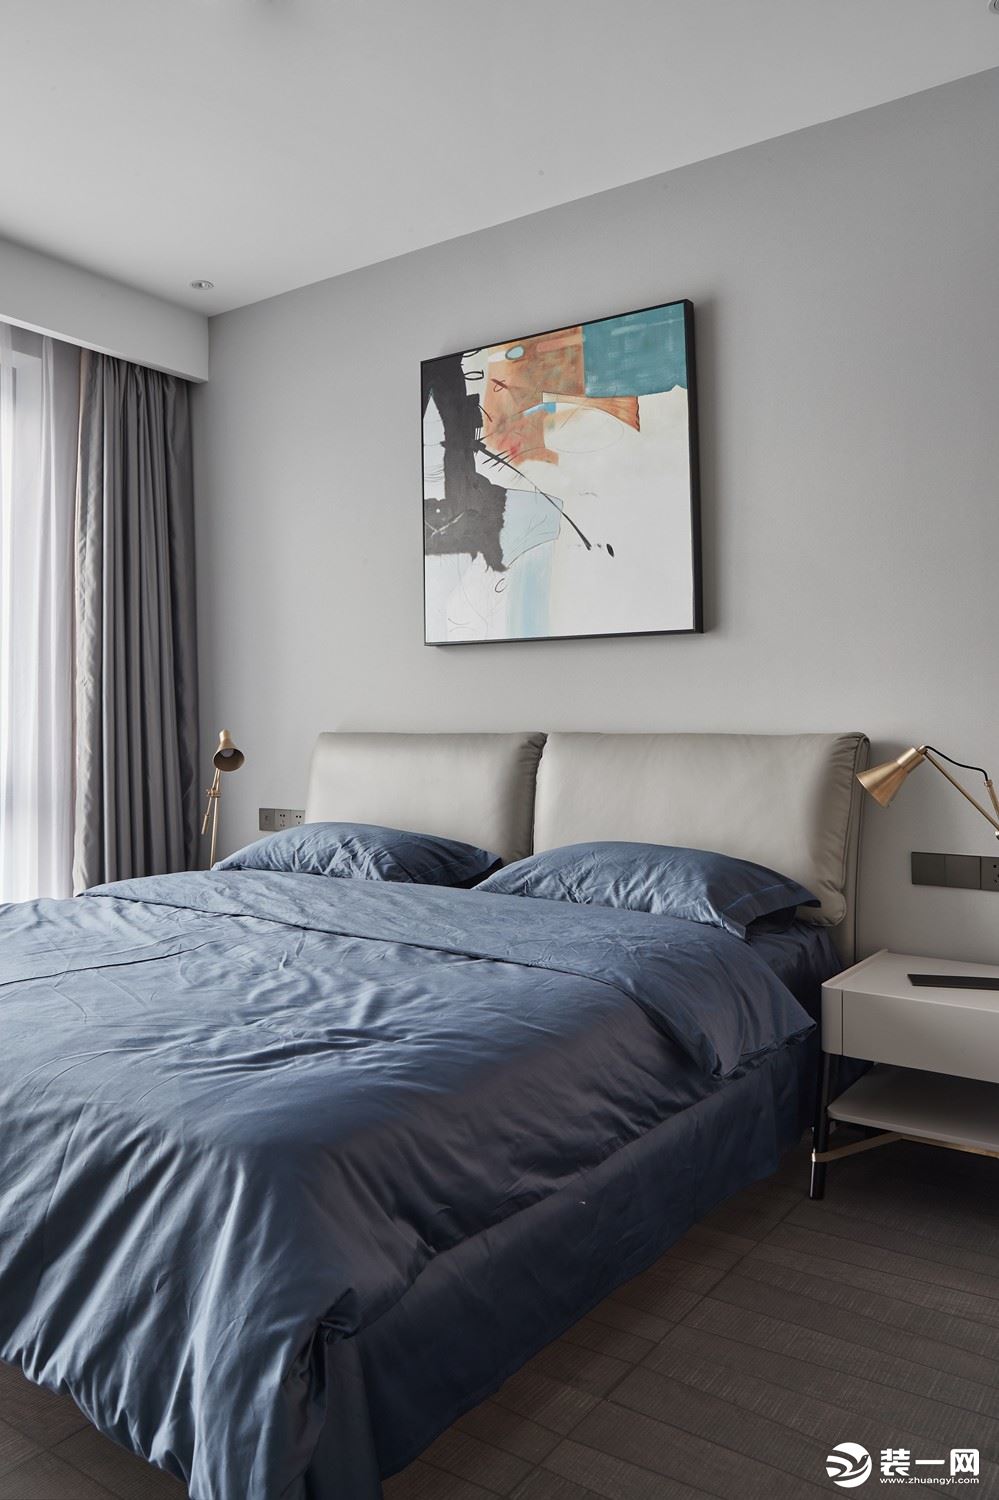 同样的卧室也是以蓝色为点缀，提升空间格调，搭配蓝色床单布置，装扮出一个舒适而又实用的卧室氛围感。